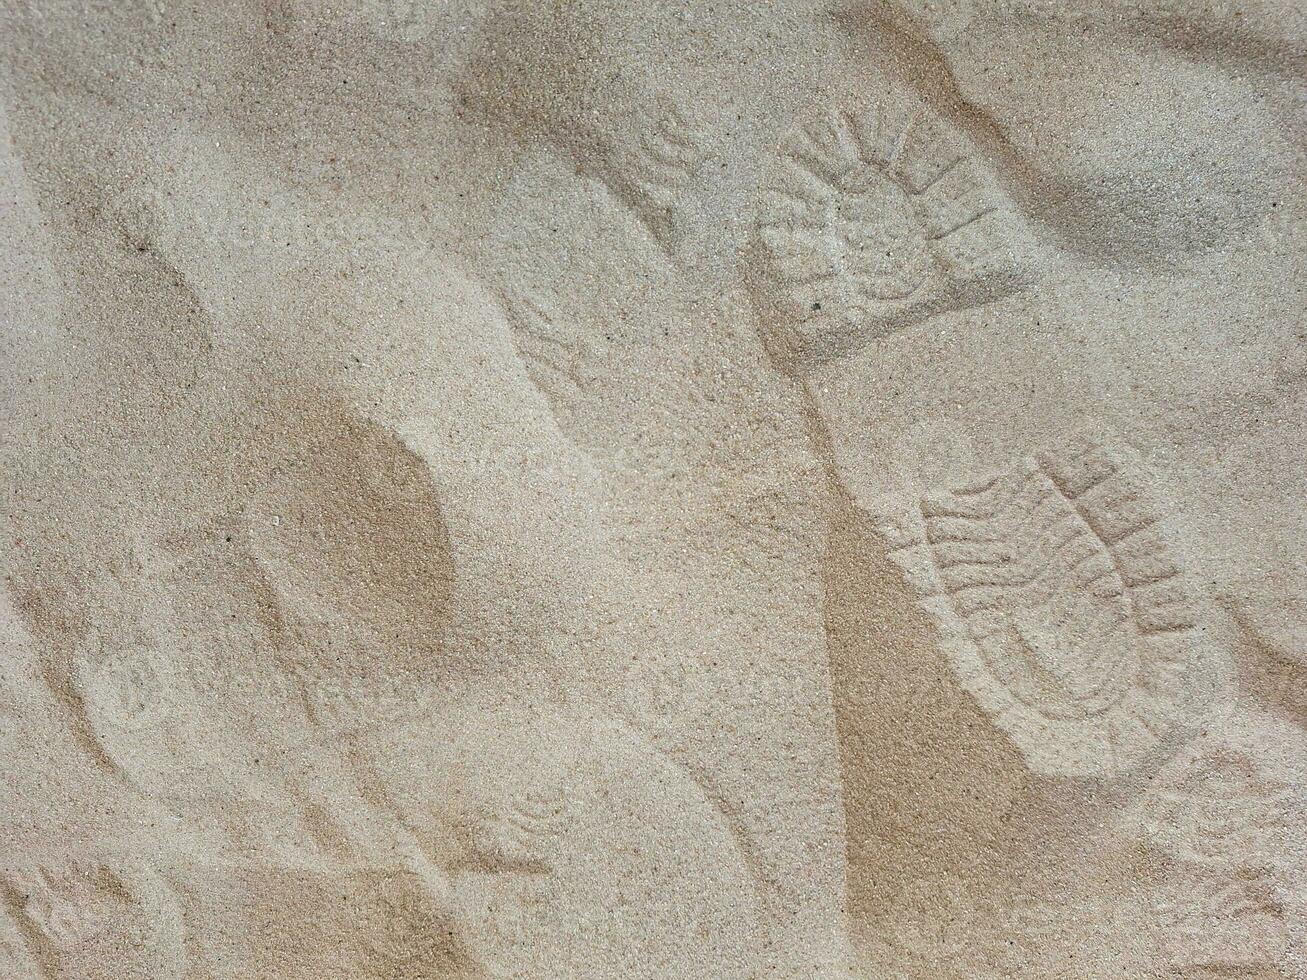 Bild von Sand mit Schuh Markierungen foto